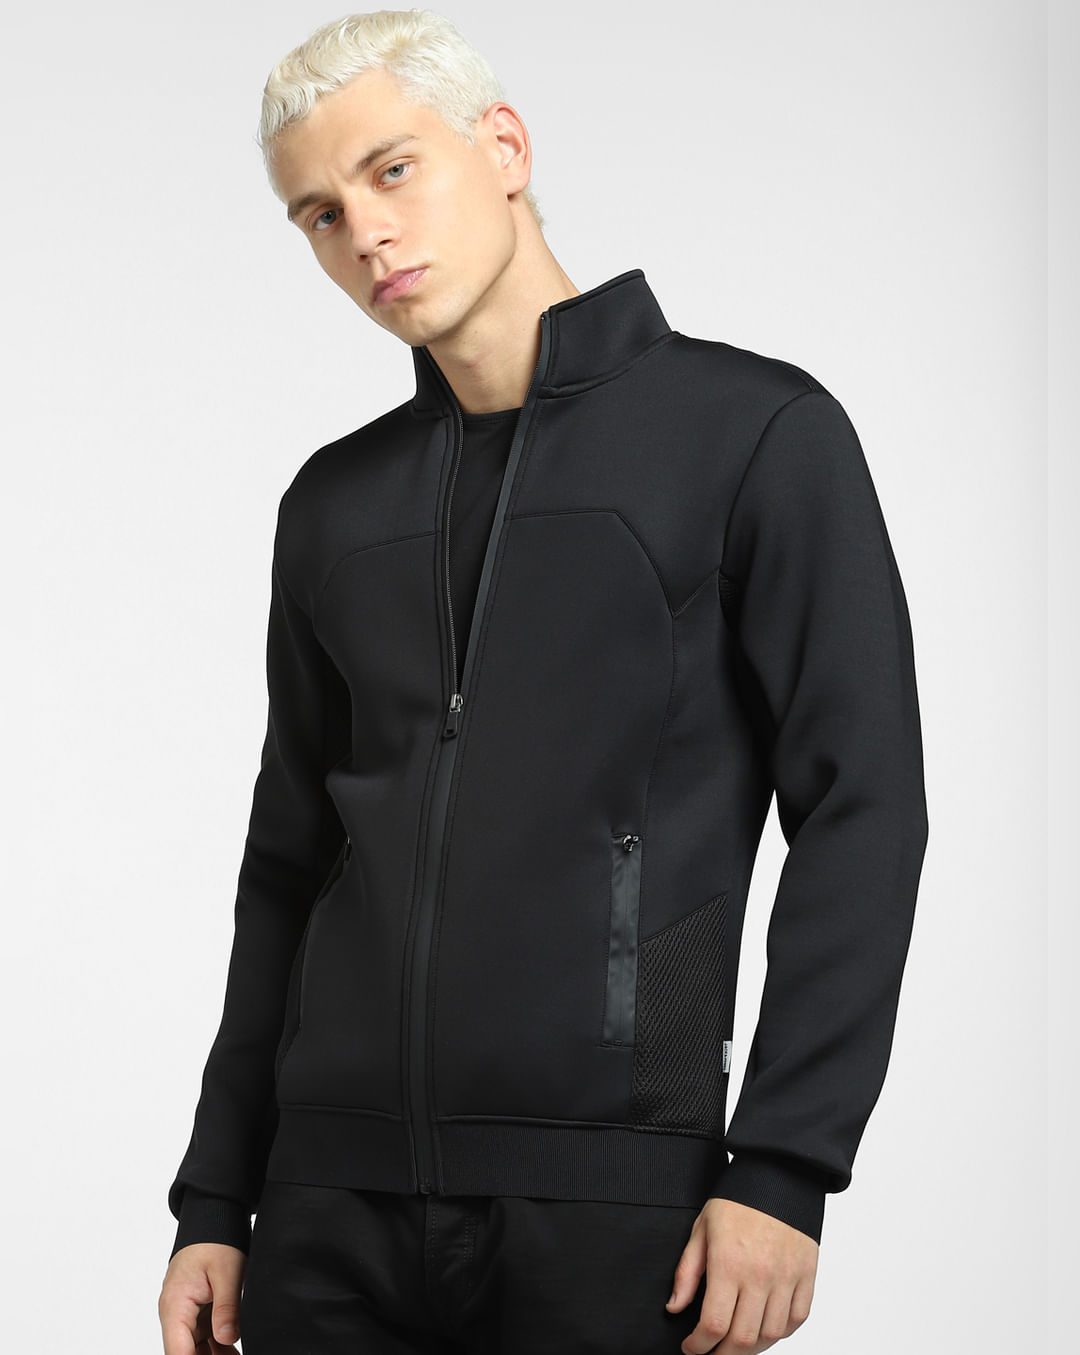 Buy Black Zip-Up Co-ord Sweatshirt for Men